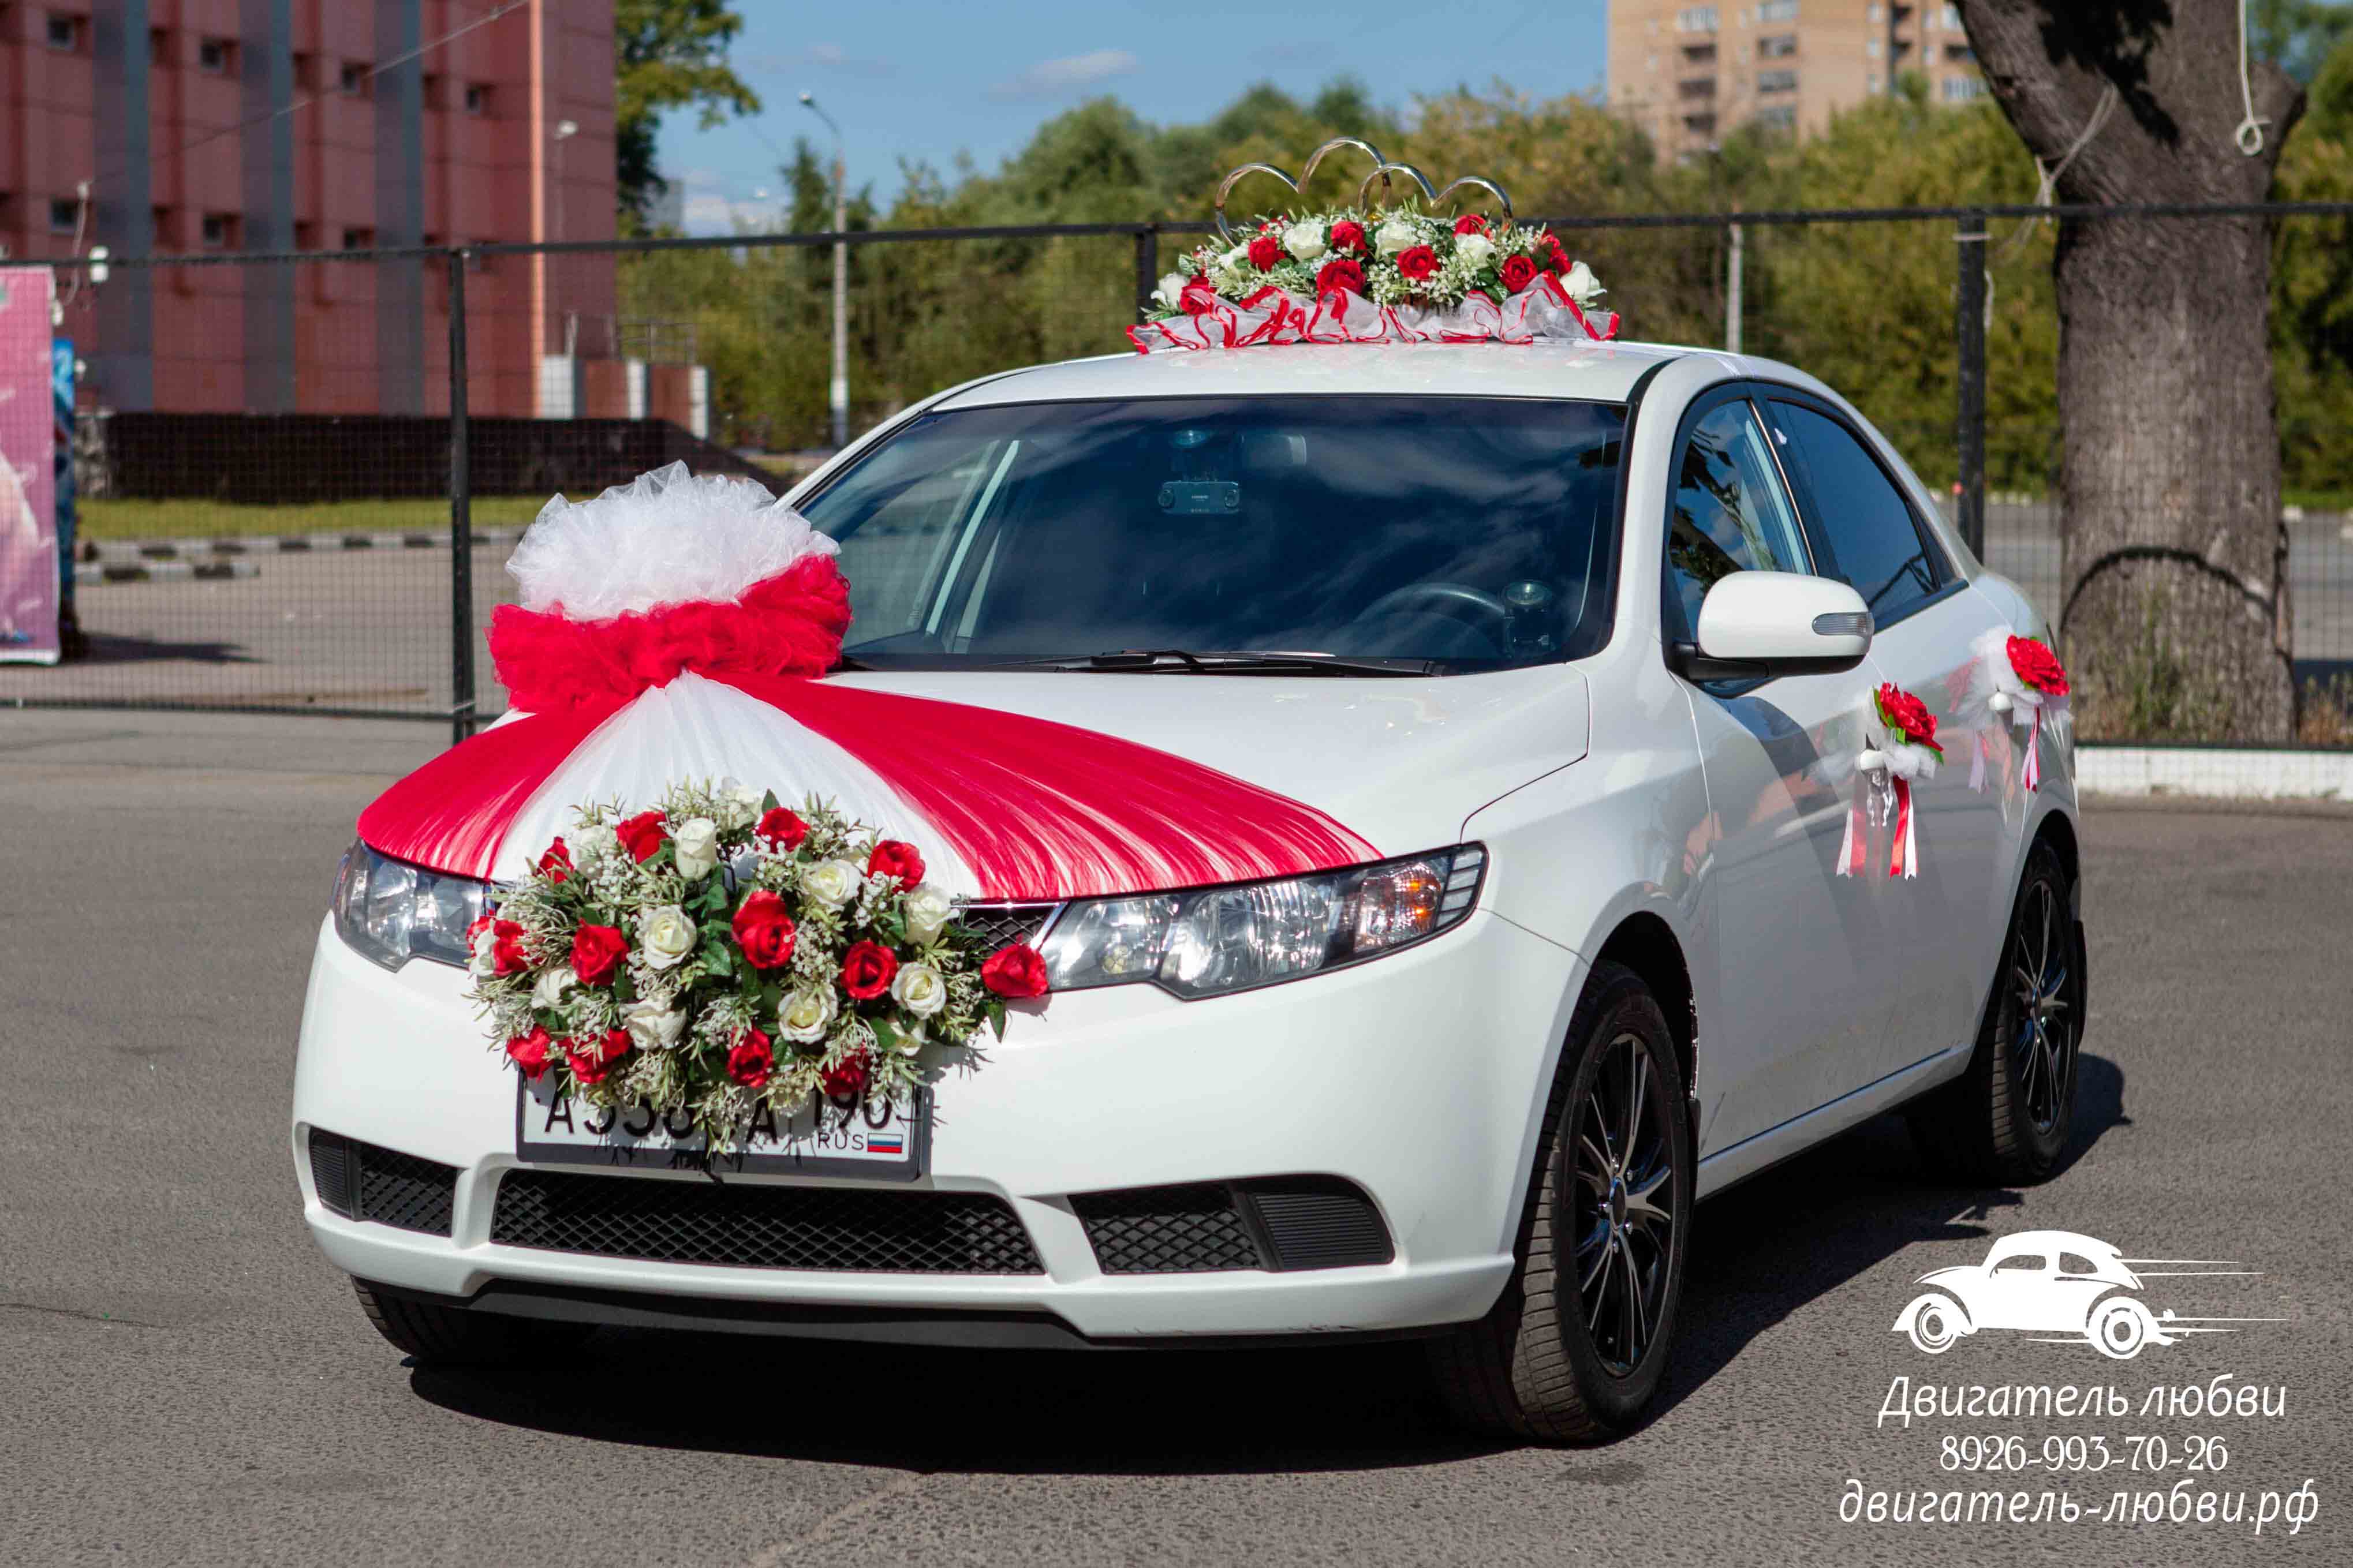 Украшения на красную машину на свадьбу напрокат